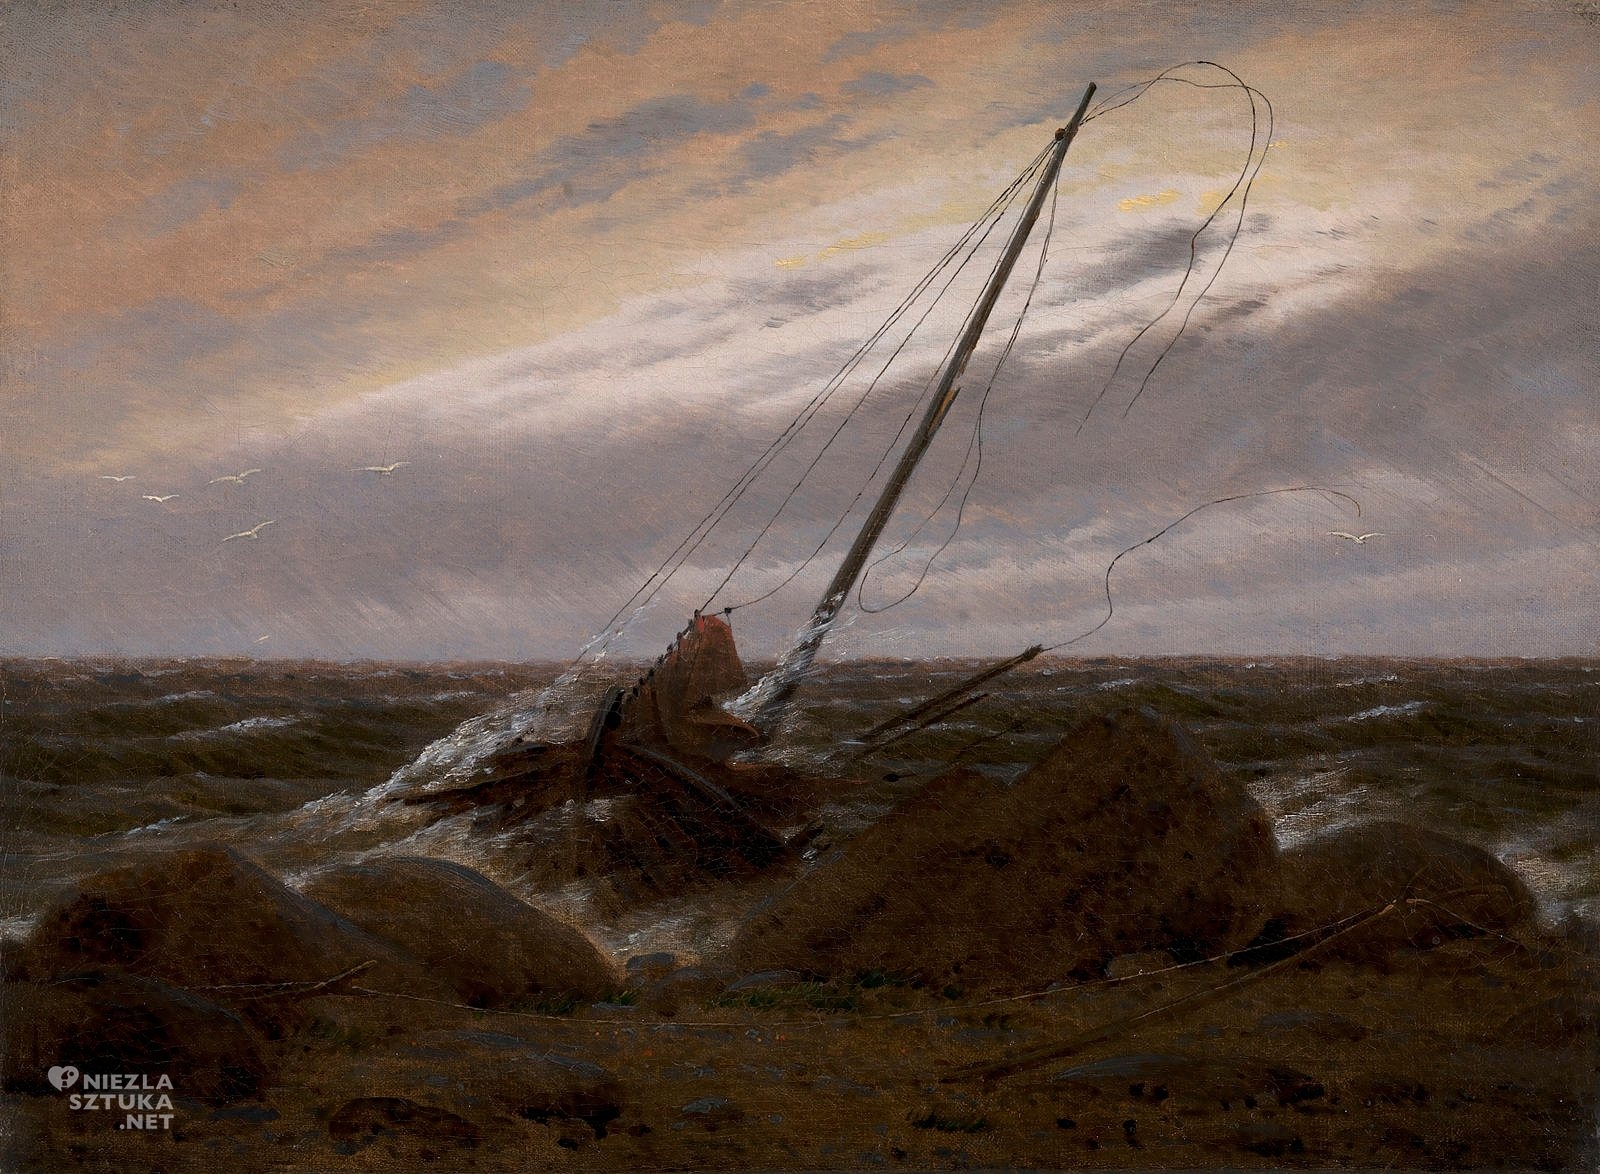 Caspar David Friedrich, Po burzy, morze, pejzaż, romantyzm, sztuka niemiecka, niezła sztuka